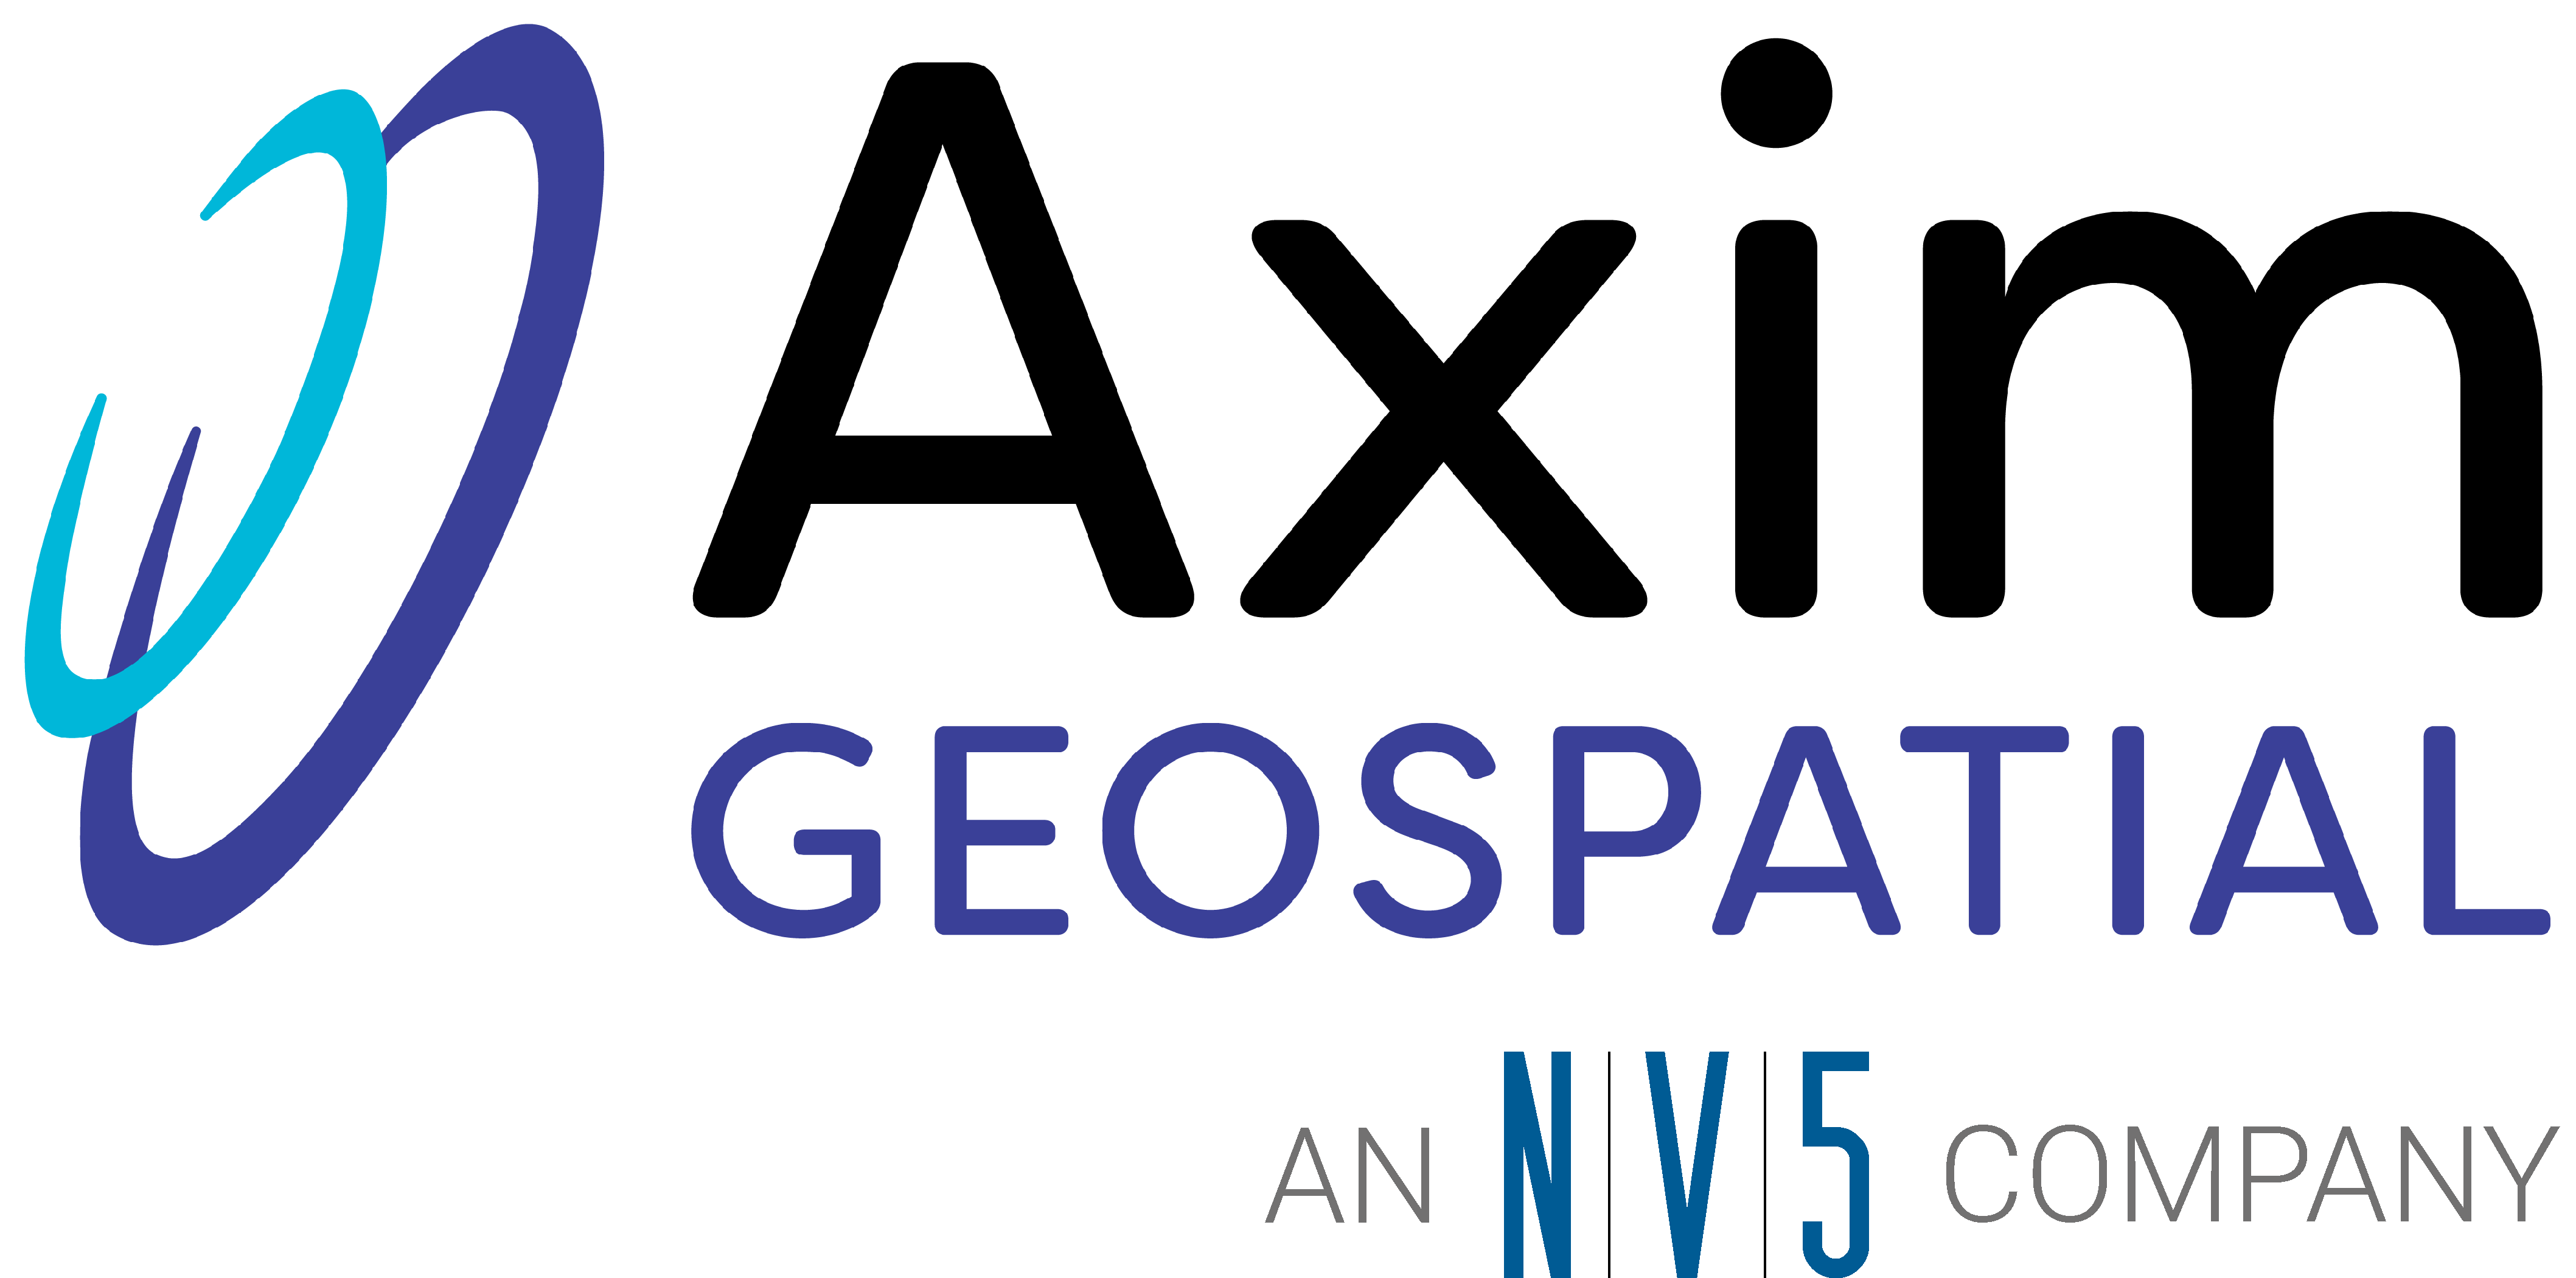 Axim Geospatial, an N|V|5 company